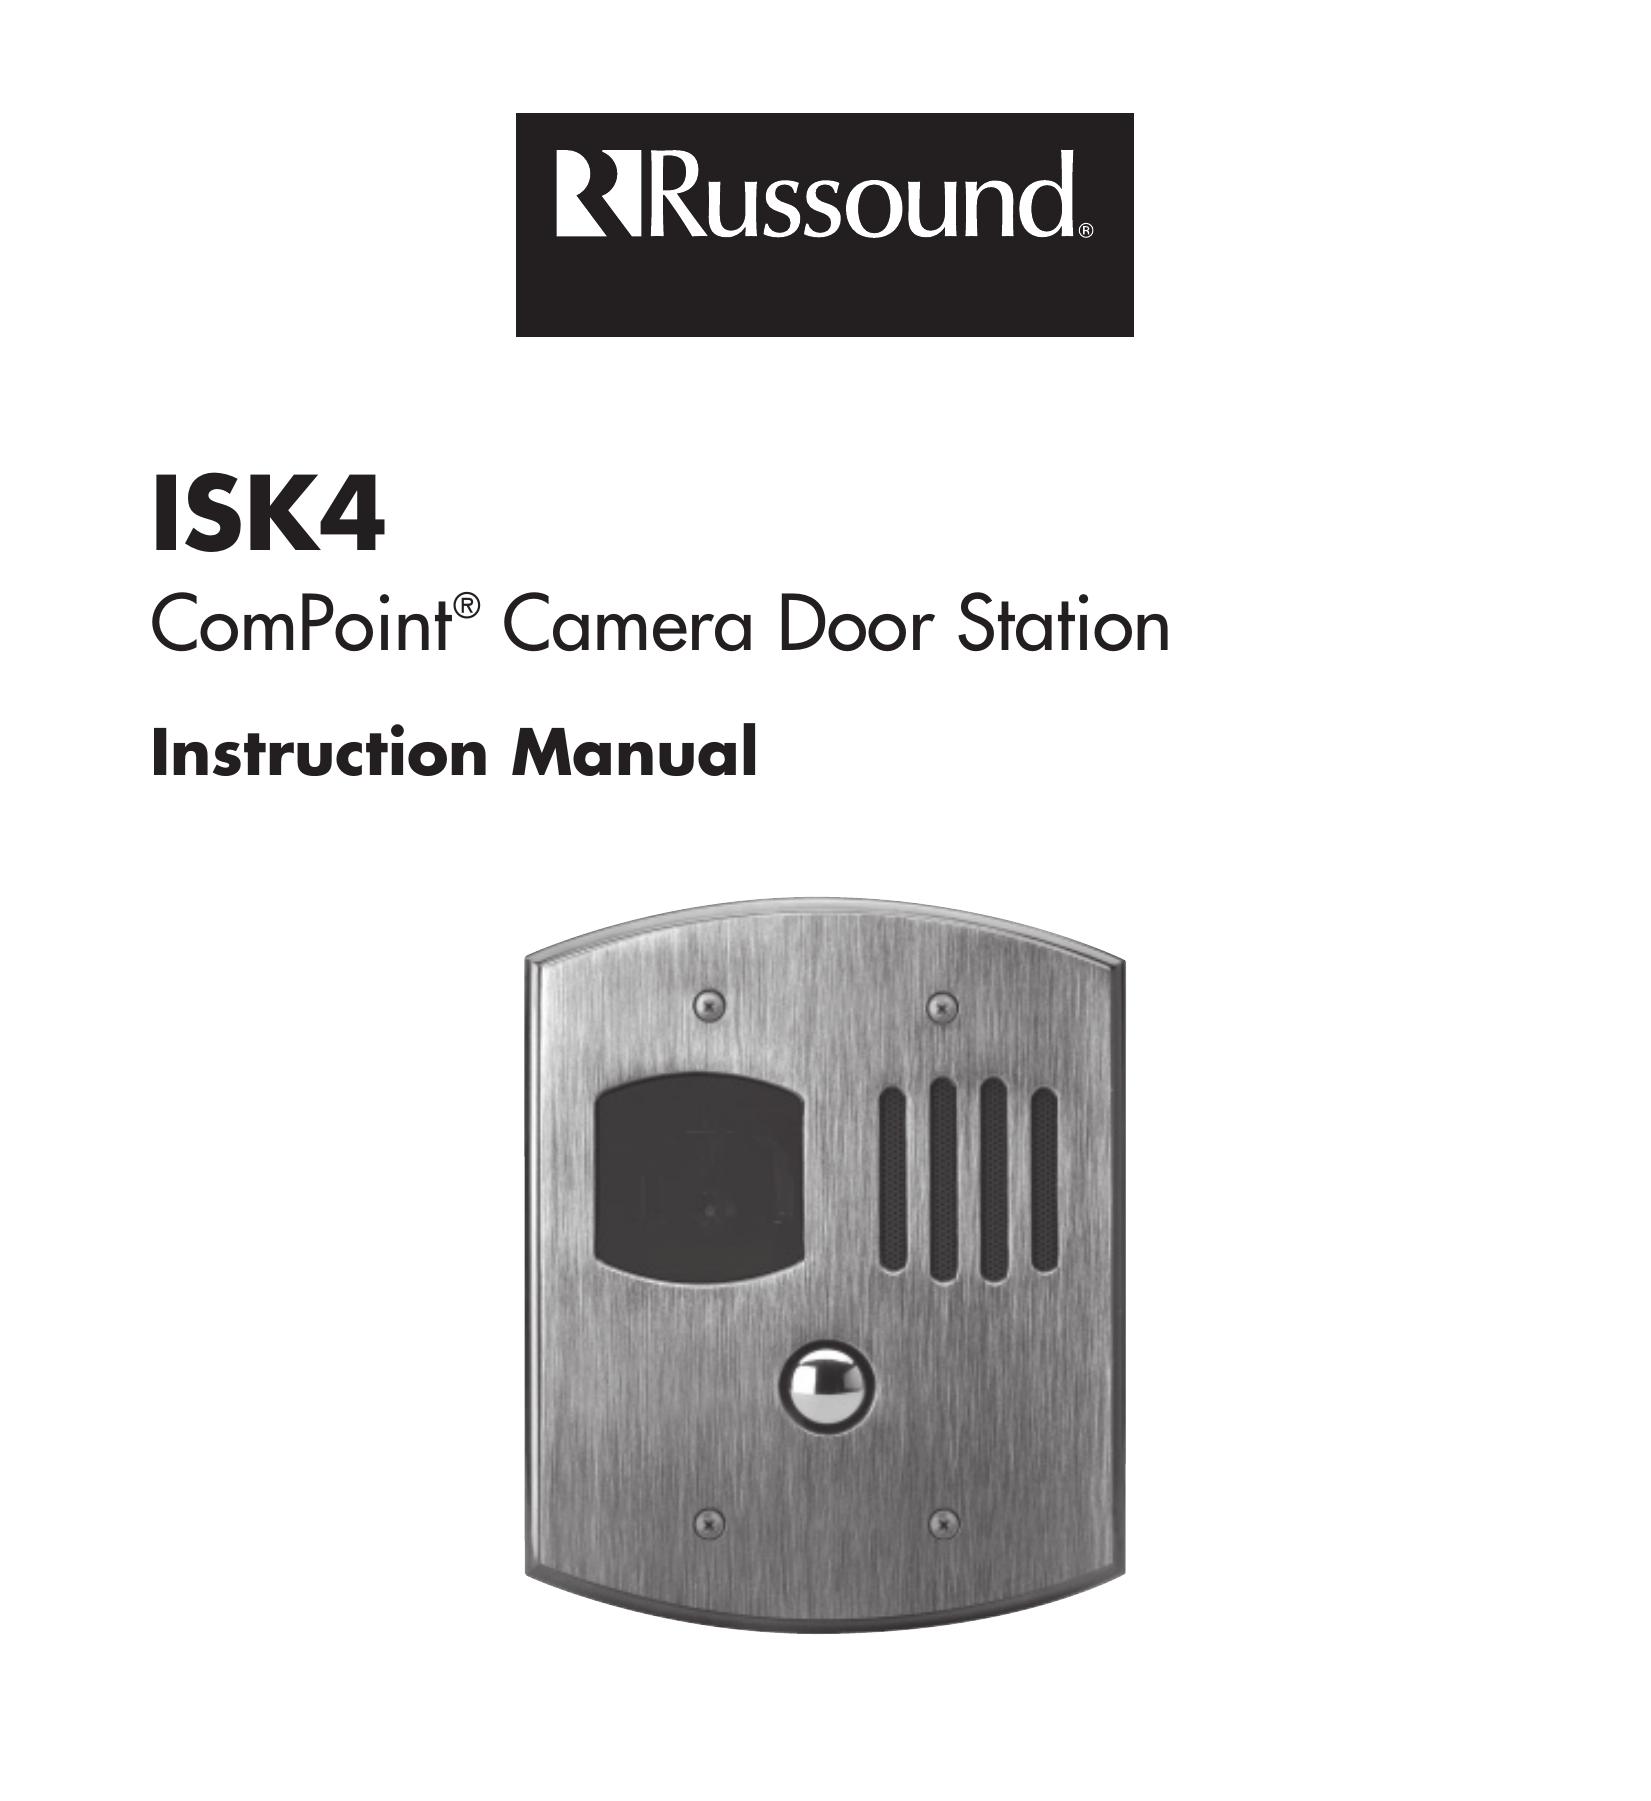 Russound ISK4 Digital Camera User Manual